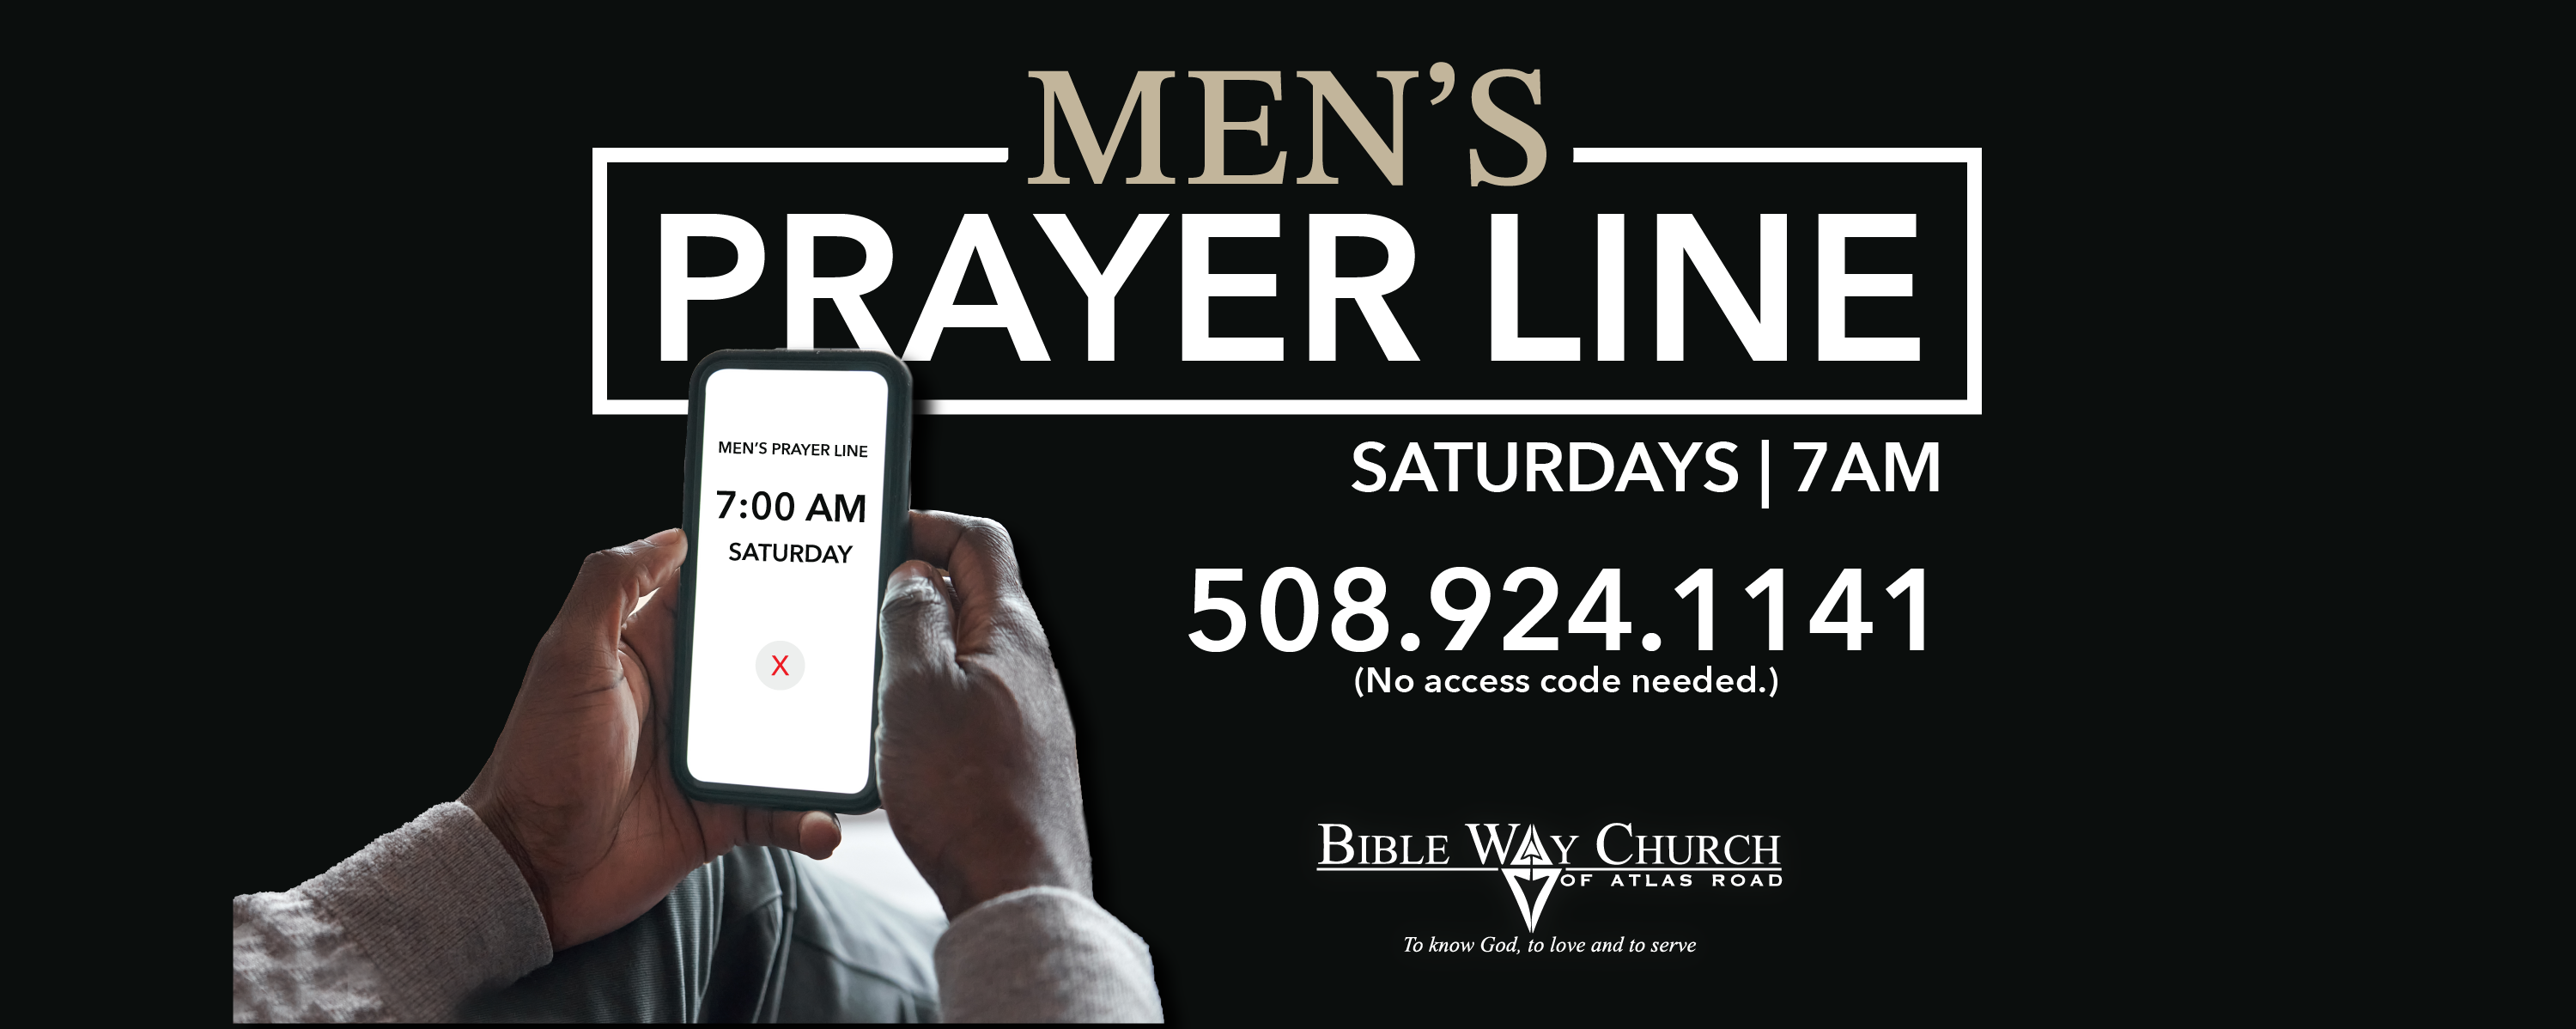 Men's Prayer Line